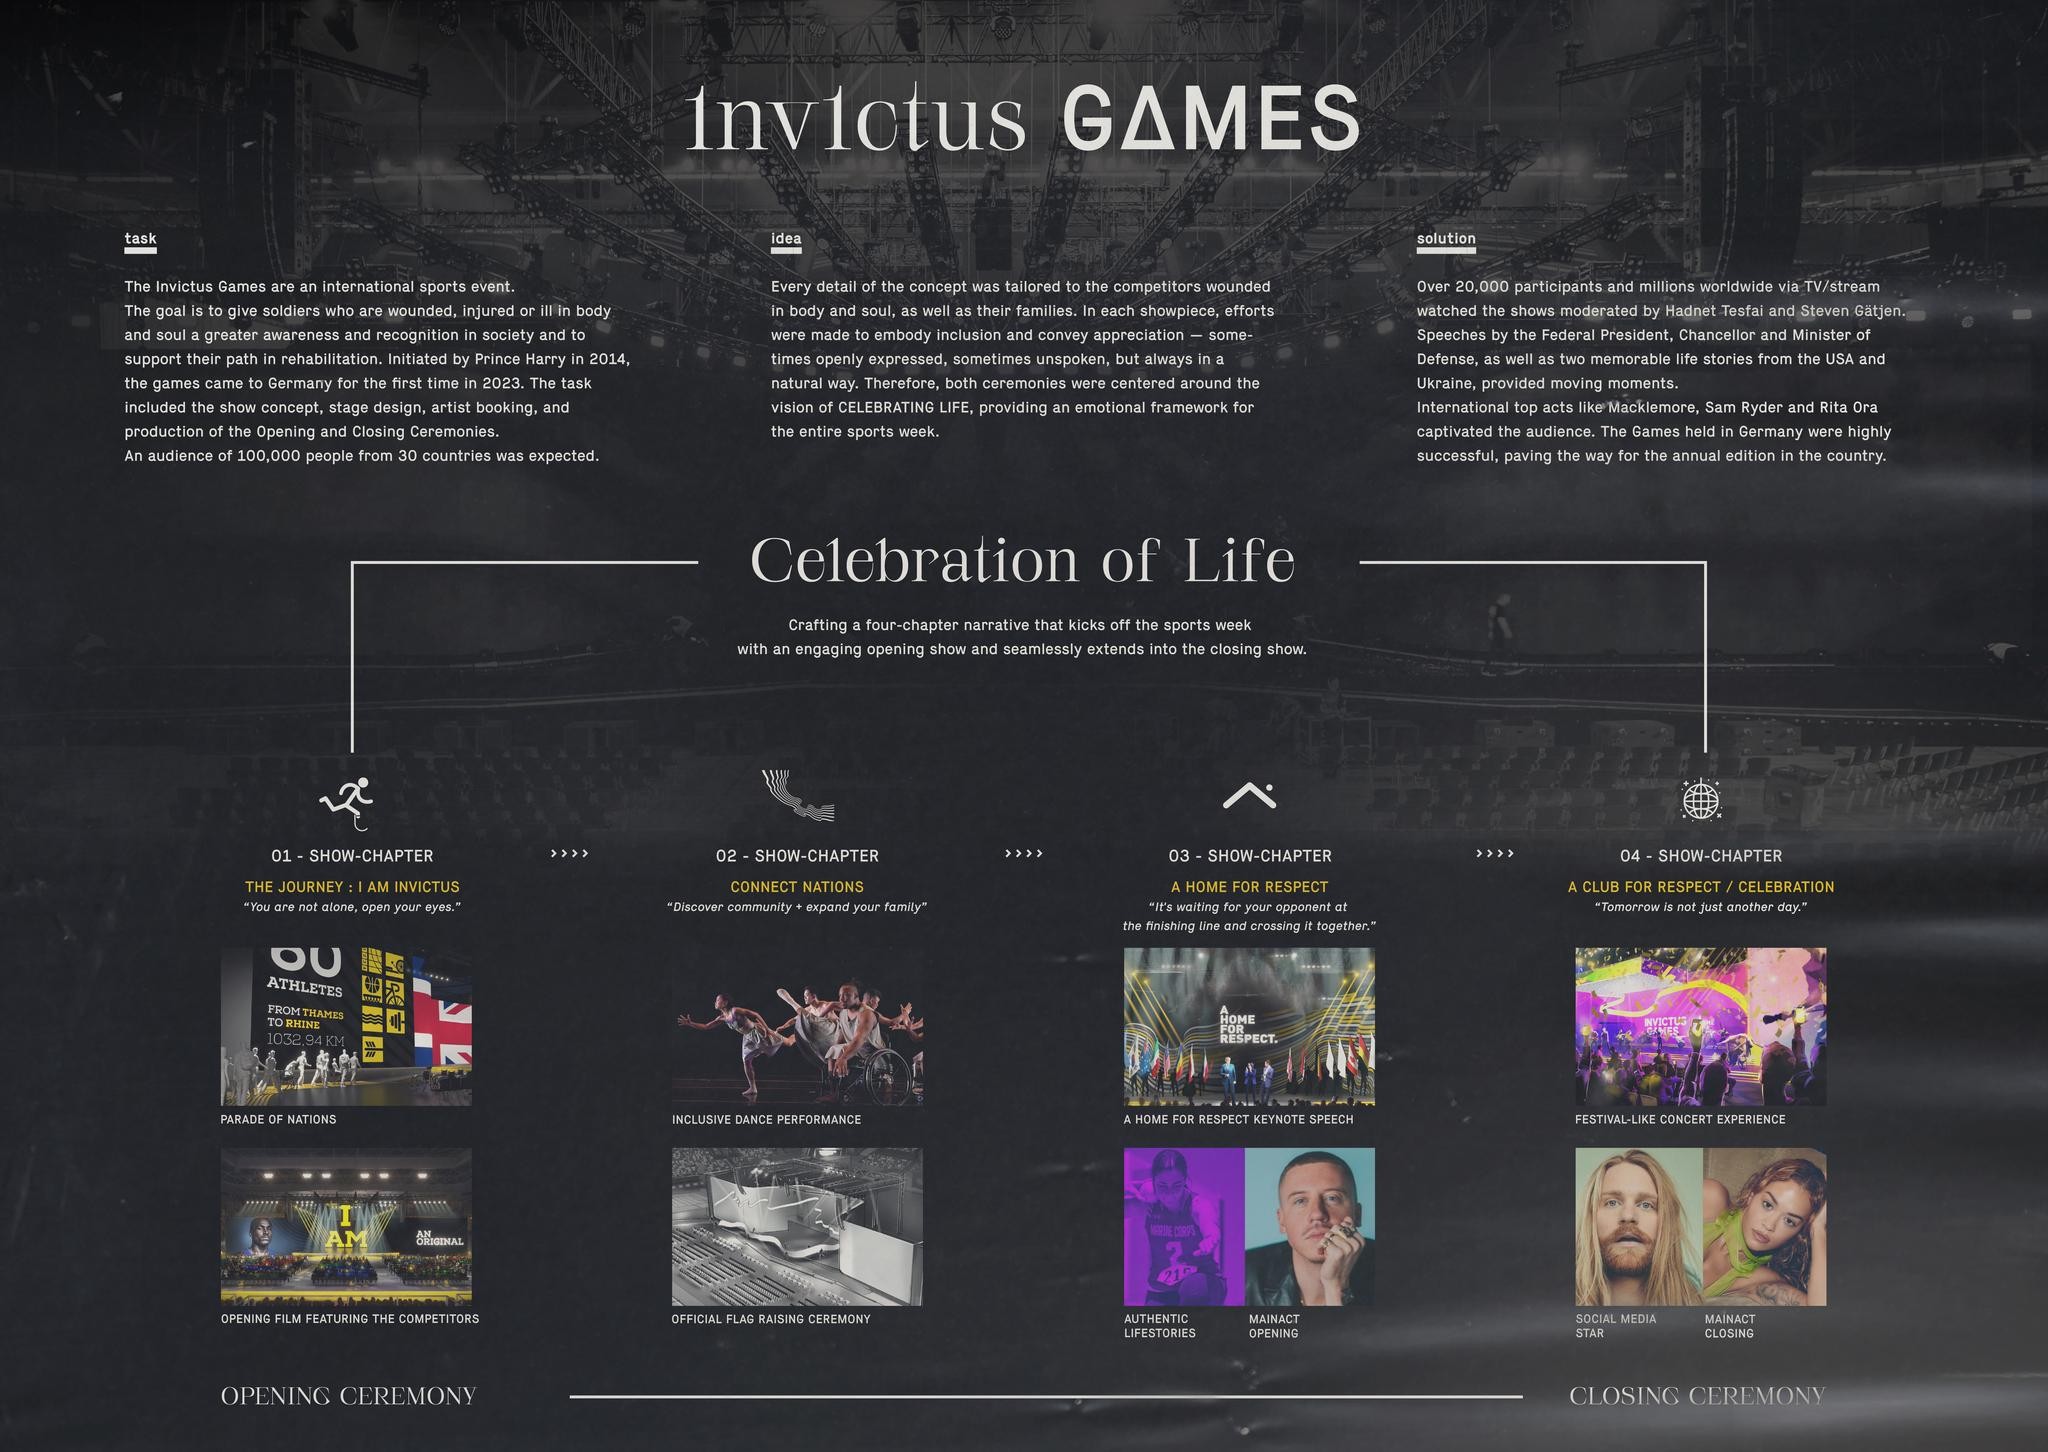 Invictus Games 2023 - Opening & Closing Ceremony